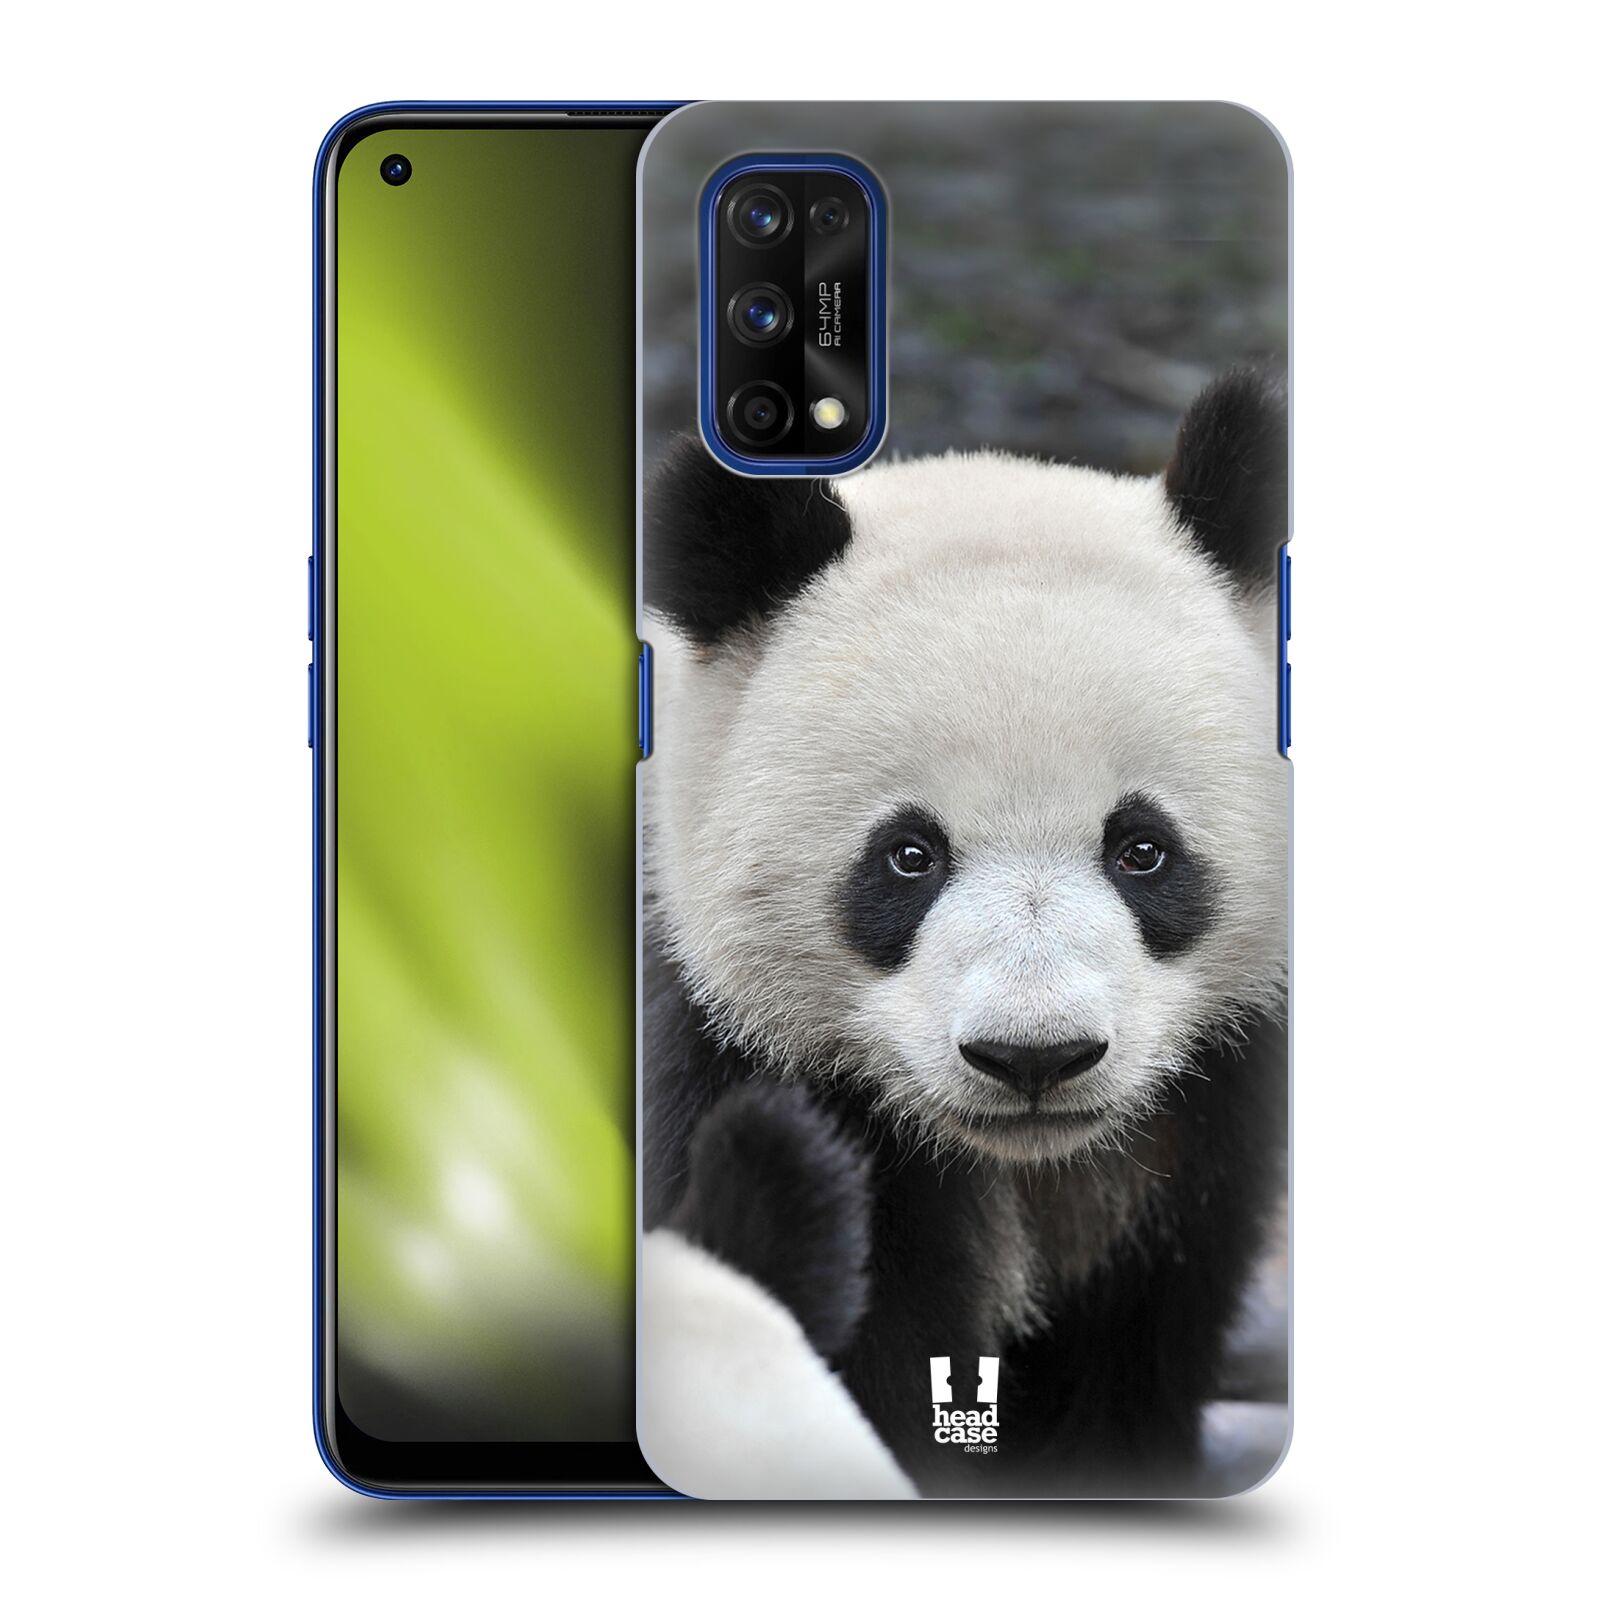 Zadní obal pro mobil Realme 7 PRO - HEAD CASE - Svět zvířat medvěd panda